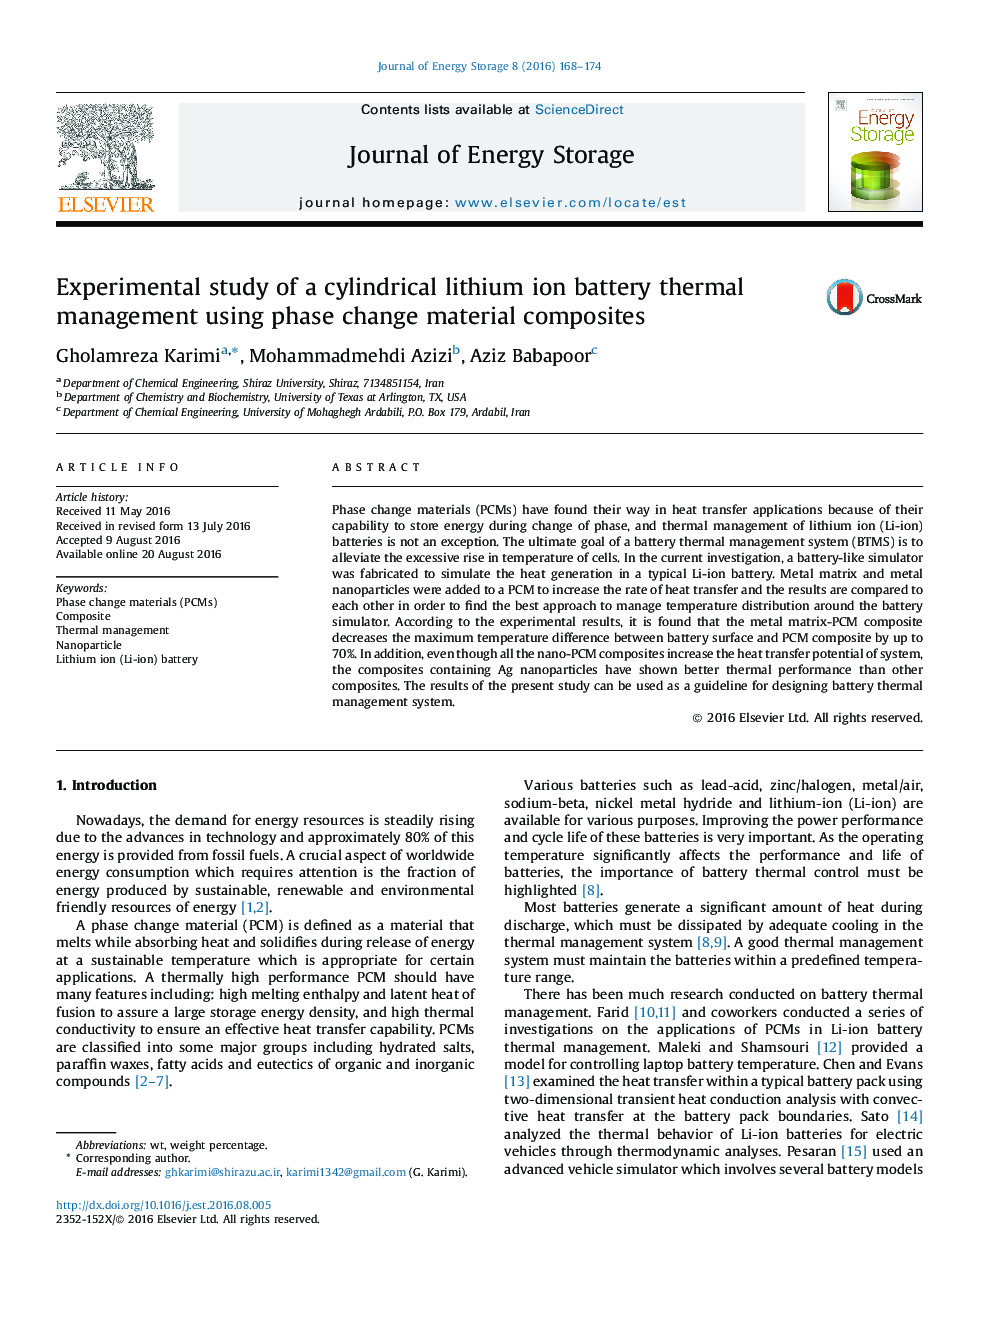 بررسی تجربی از مدیریت حرارتی باتری لیتیوم استوانه با استفاده از مواد کامپوزیتی تغییر فاز 